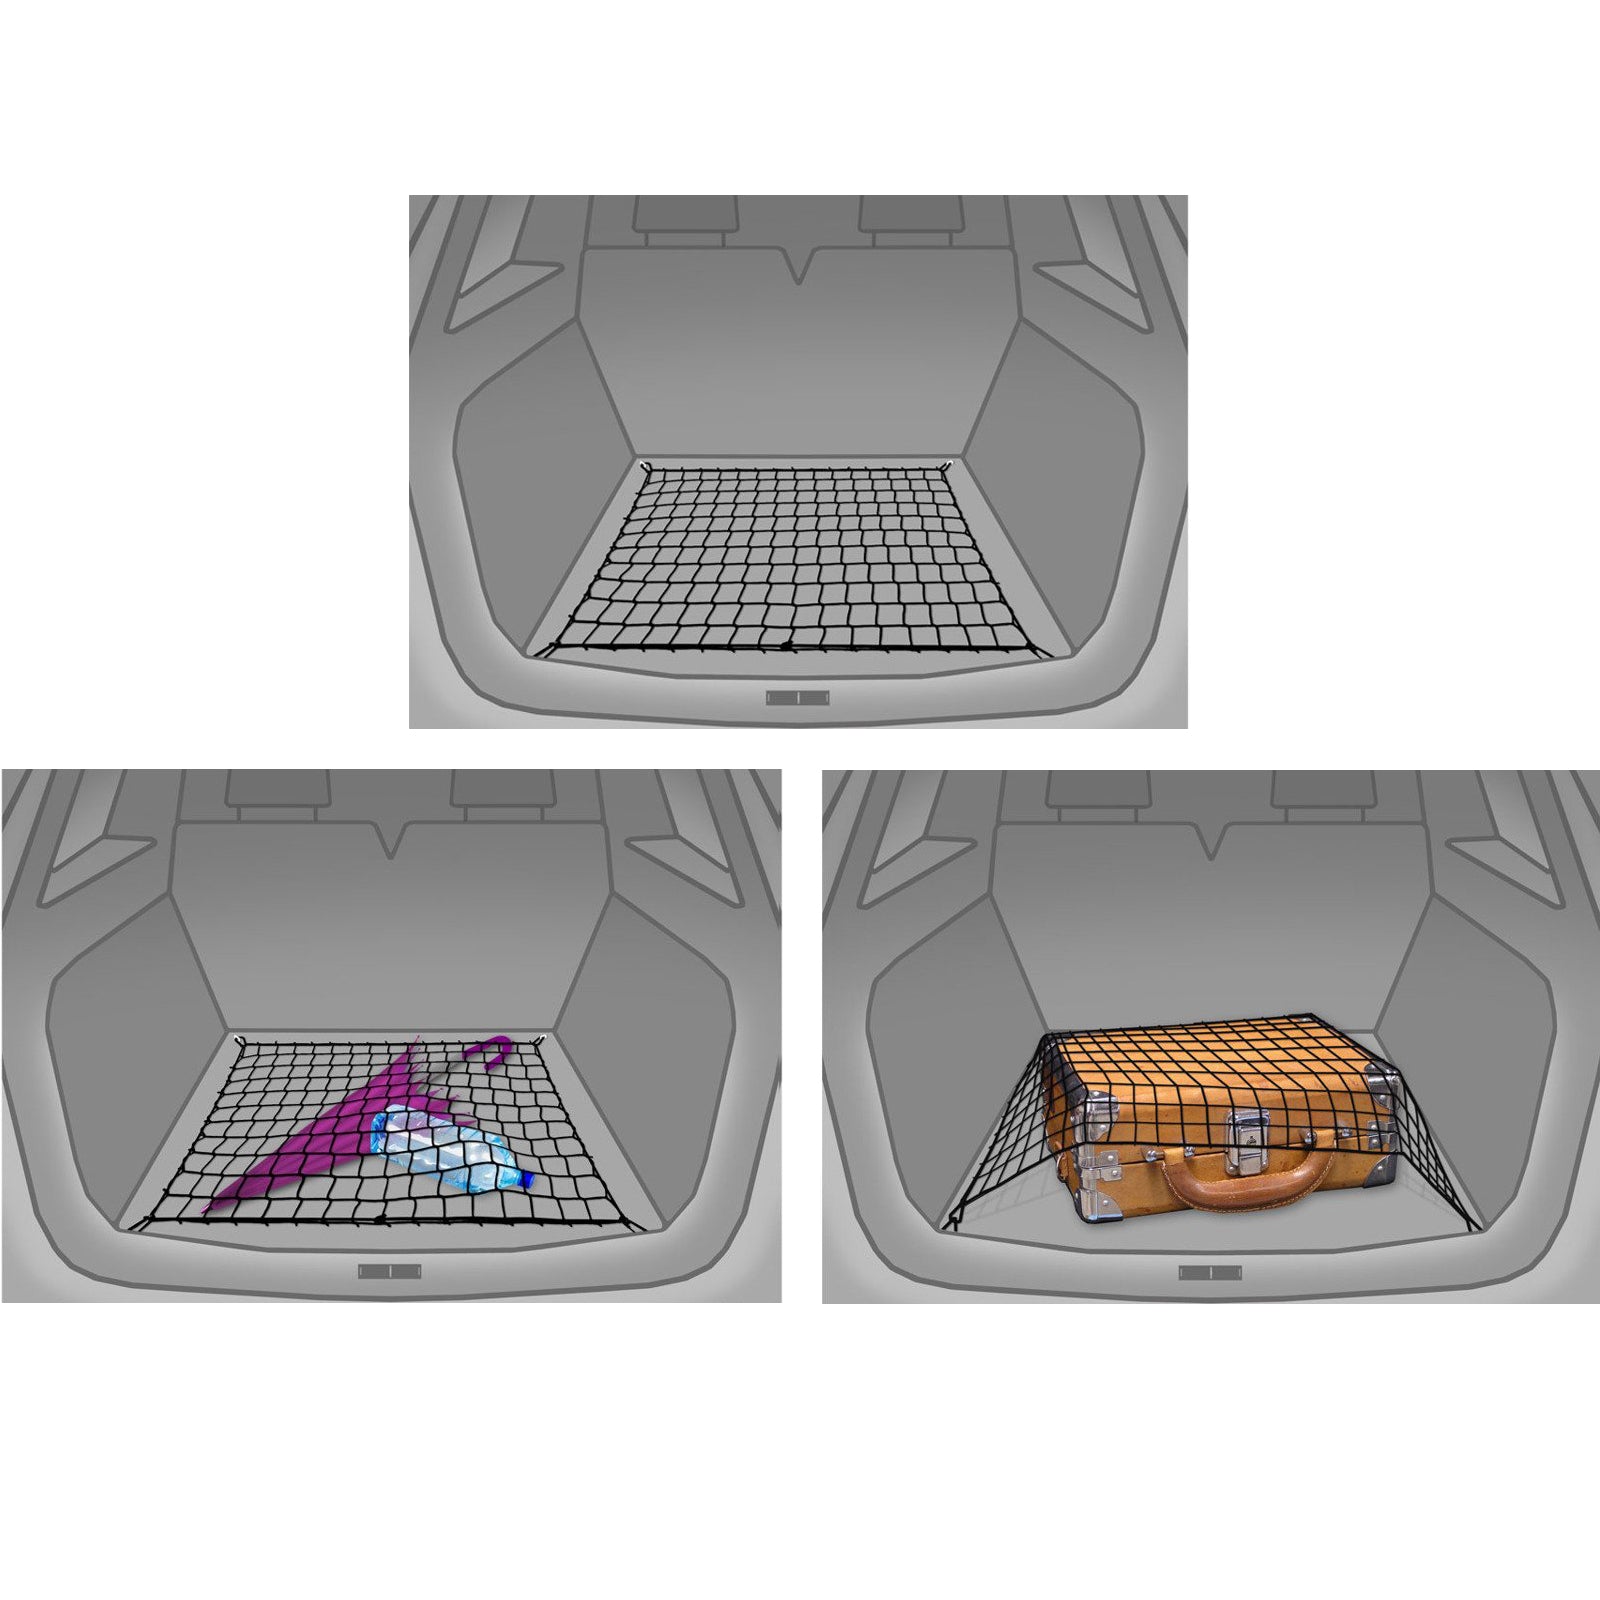 Autosiatki Kofferraumbodennetz Netz Gepäcknetz für BMW 3er E90